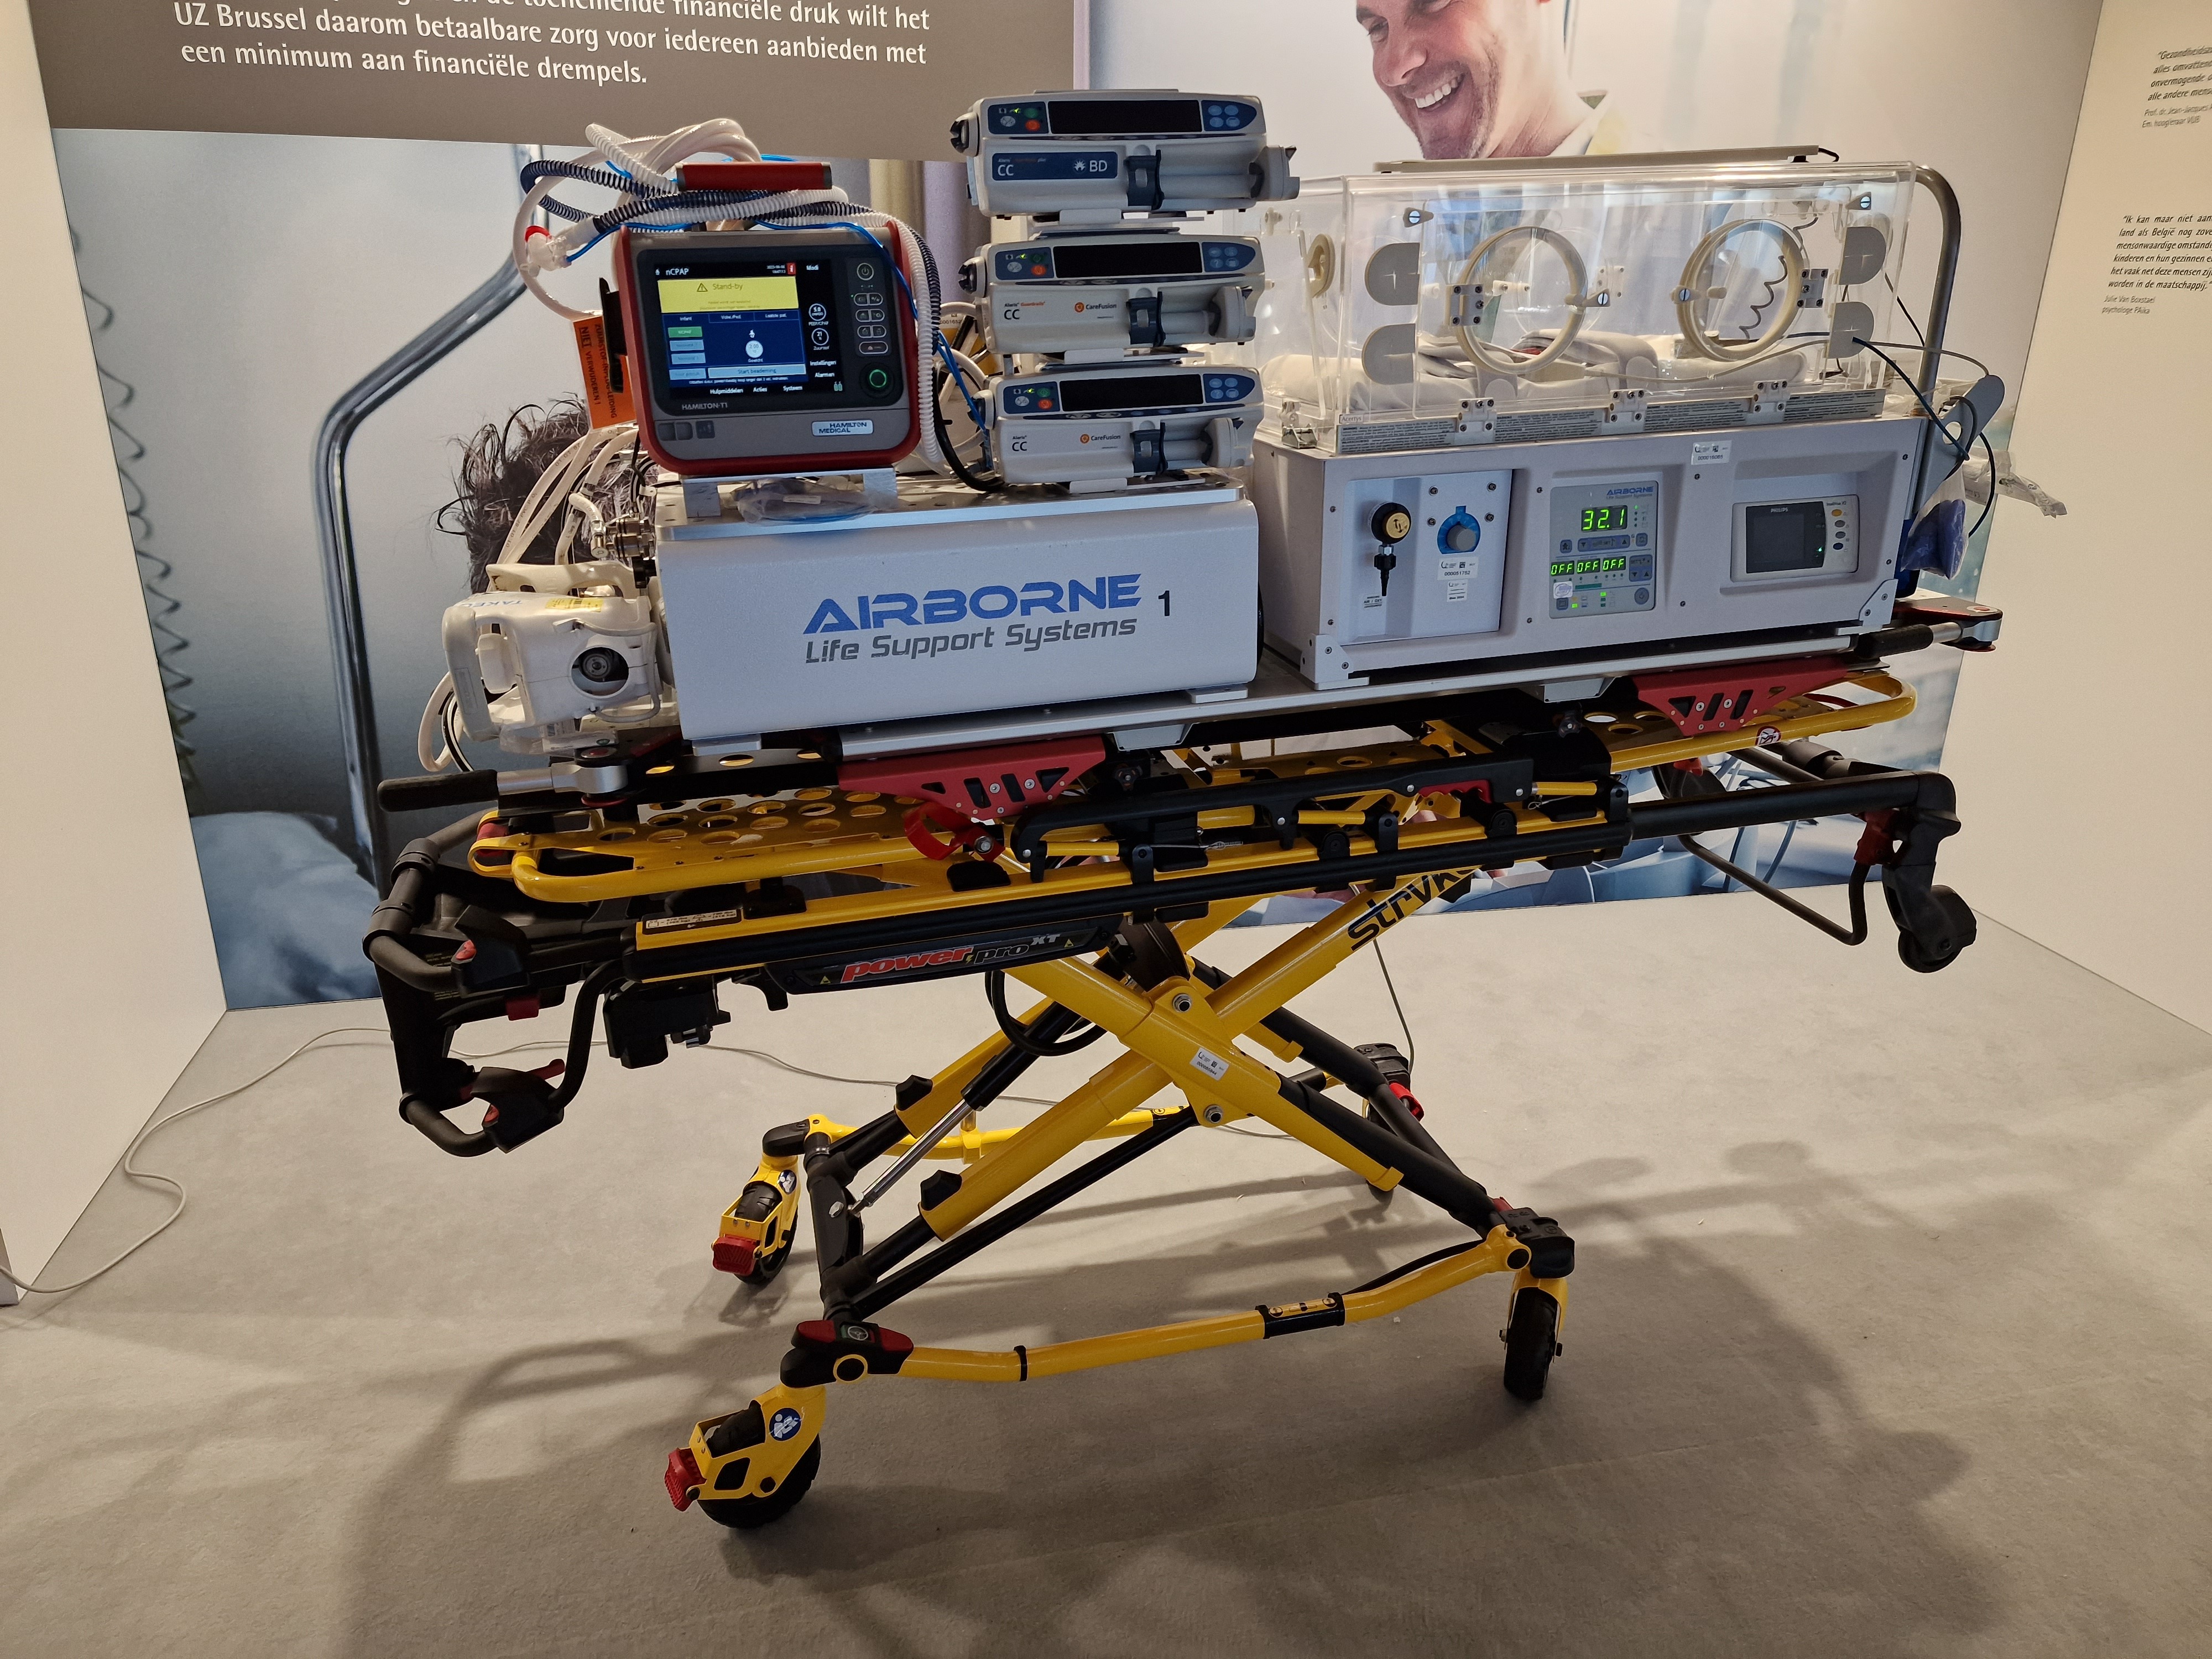 Nouvelle ambulance haute technologie pour l’UZ Brussel  5dju